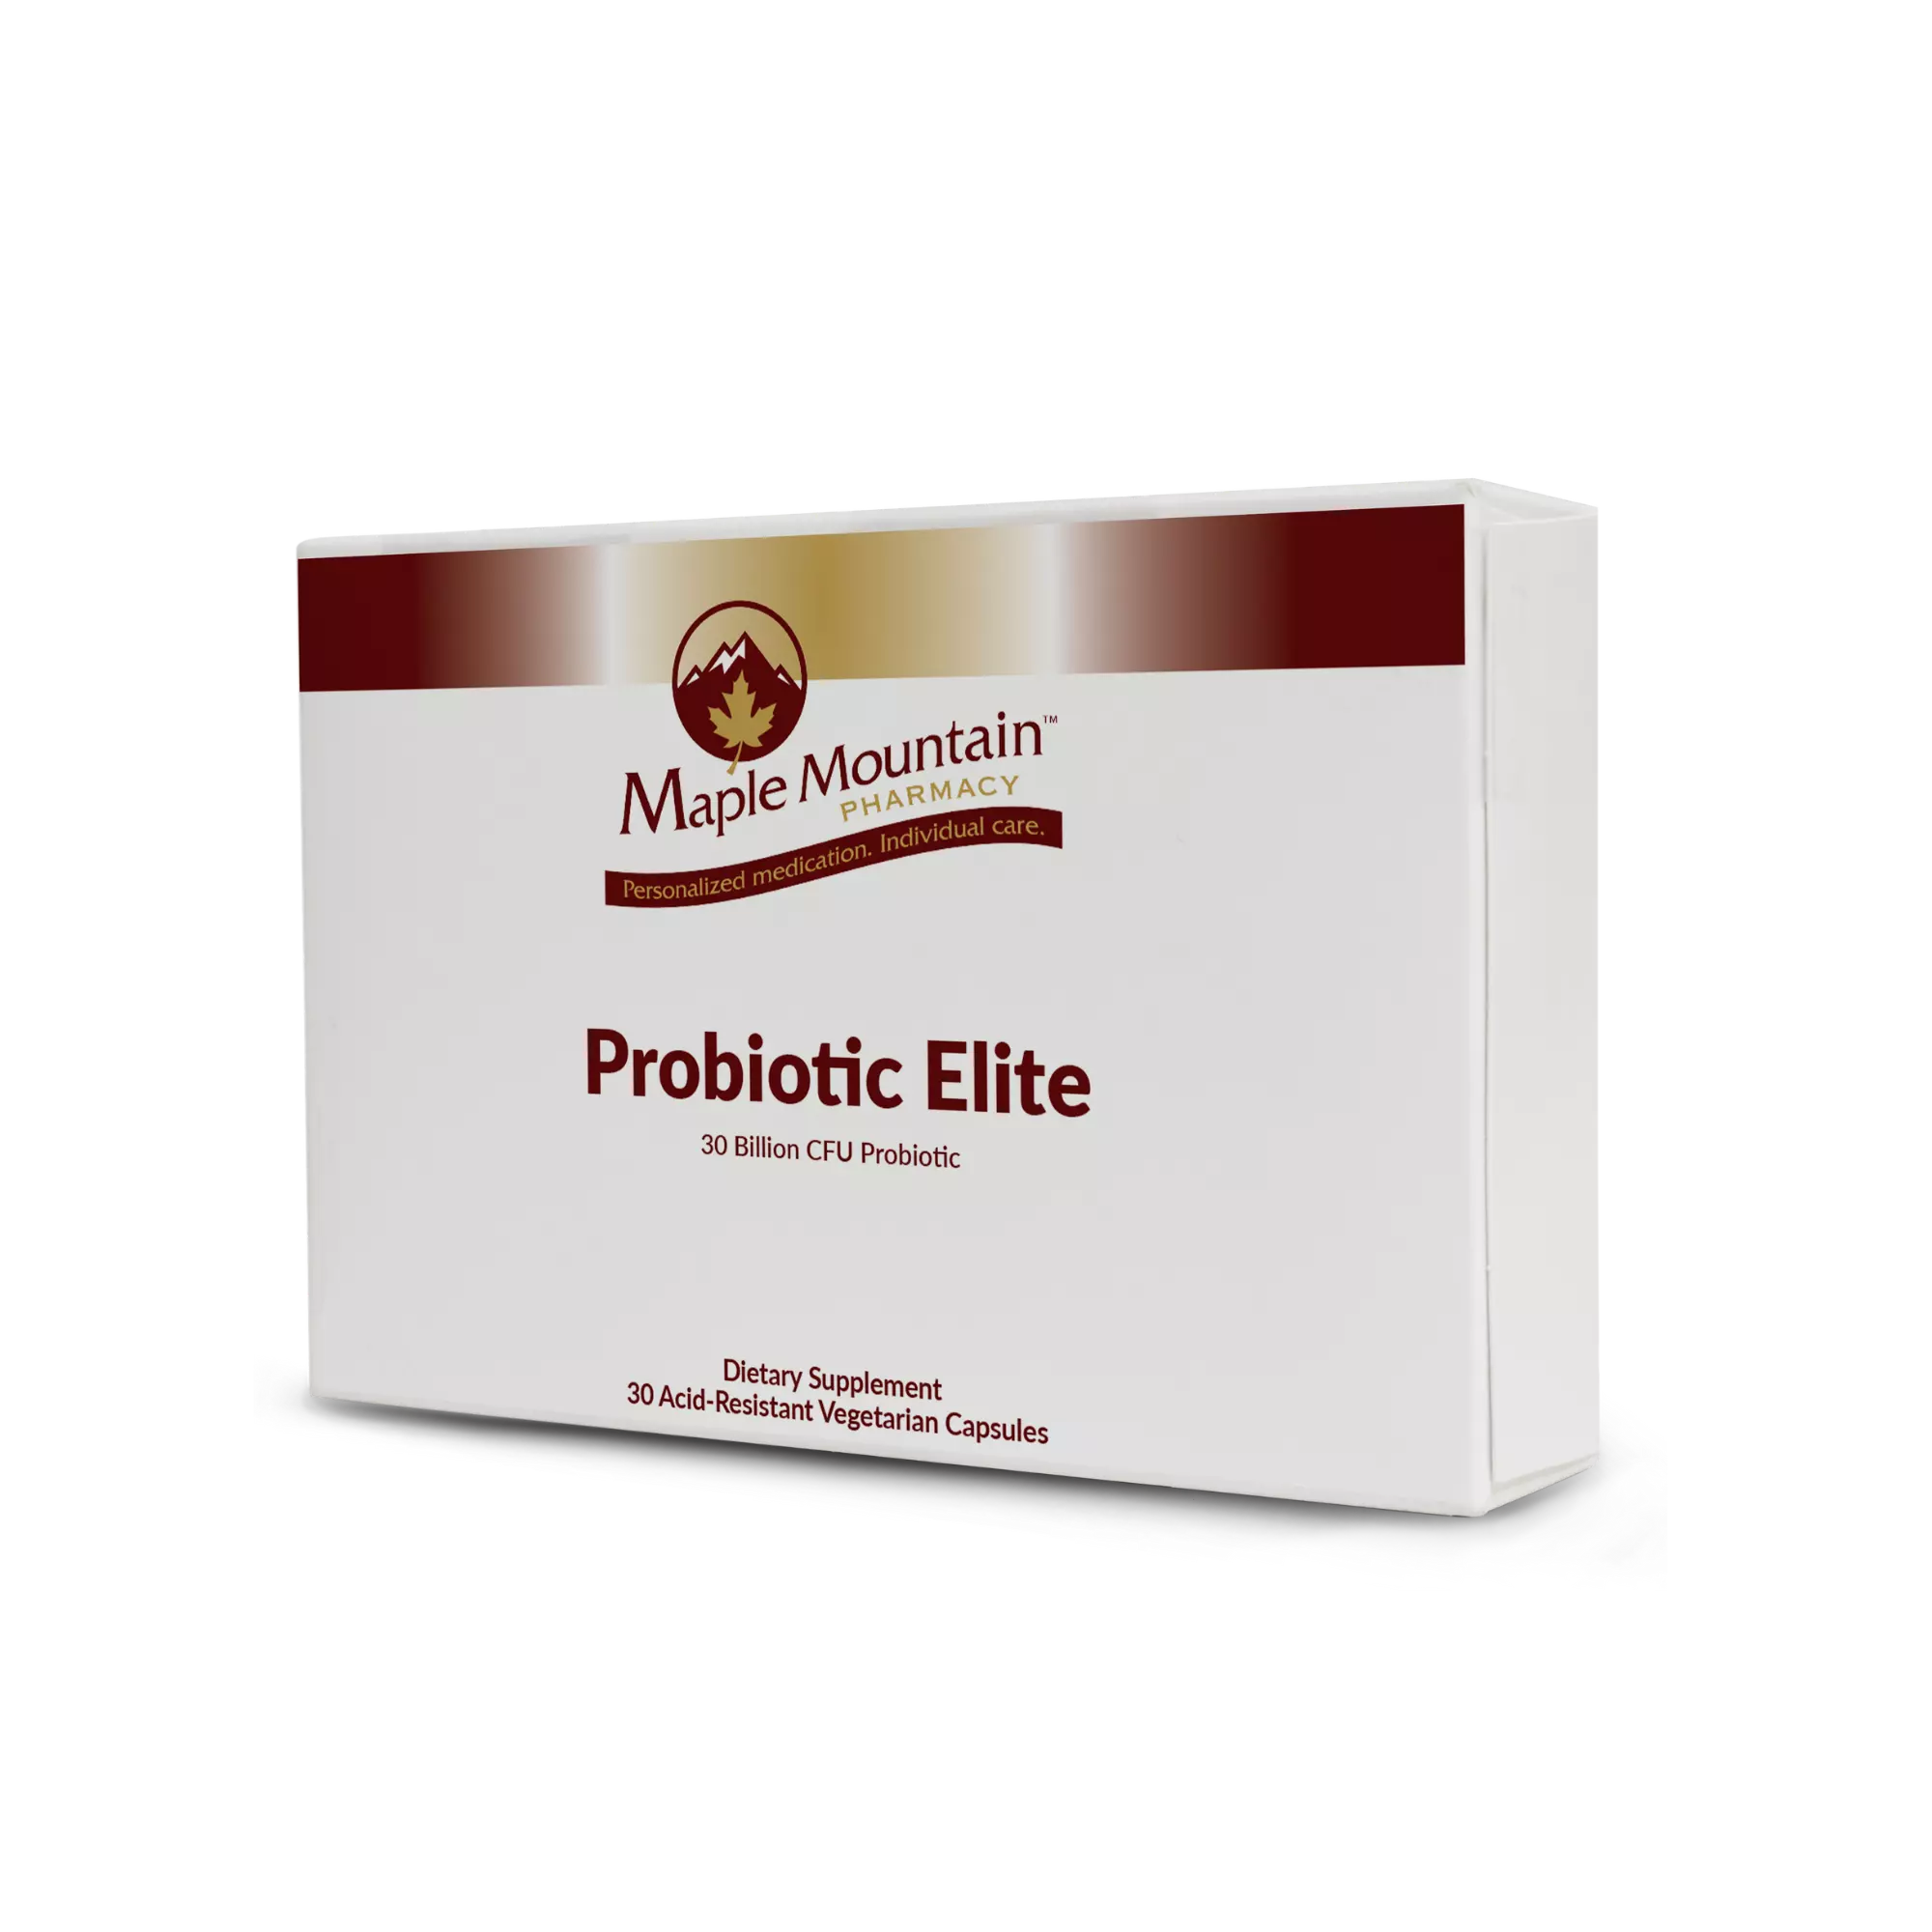 Probiotic Elite